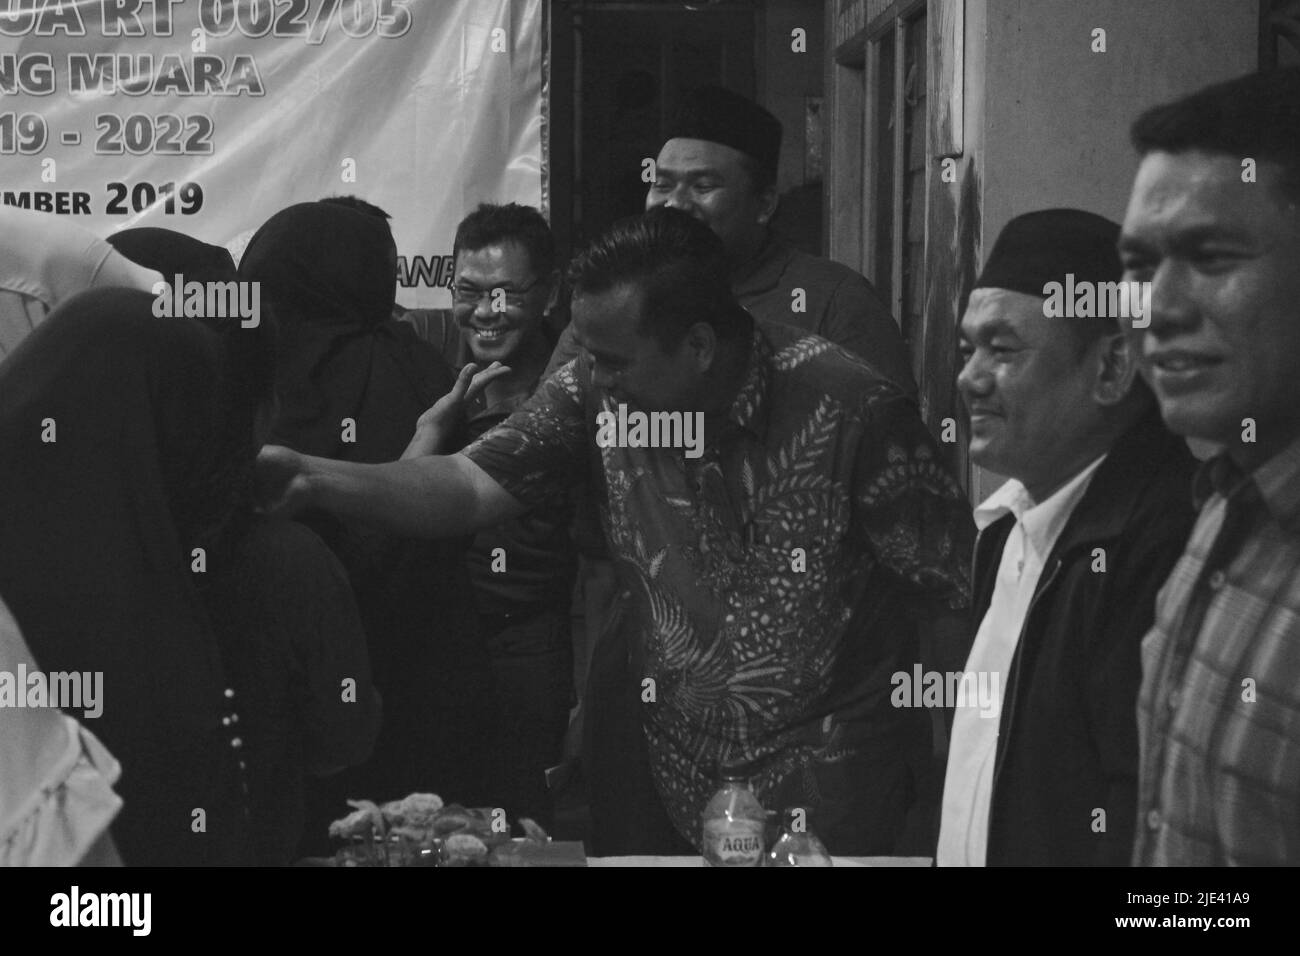 Jakarta, Indonesien - 12 14 2019: Schwarzweiß-Foto des Ausdrucks einer glücklichen Gemeinschaft über die Wahl eines neuen Vorsitzenden mit Wohnsitz Stockfoto